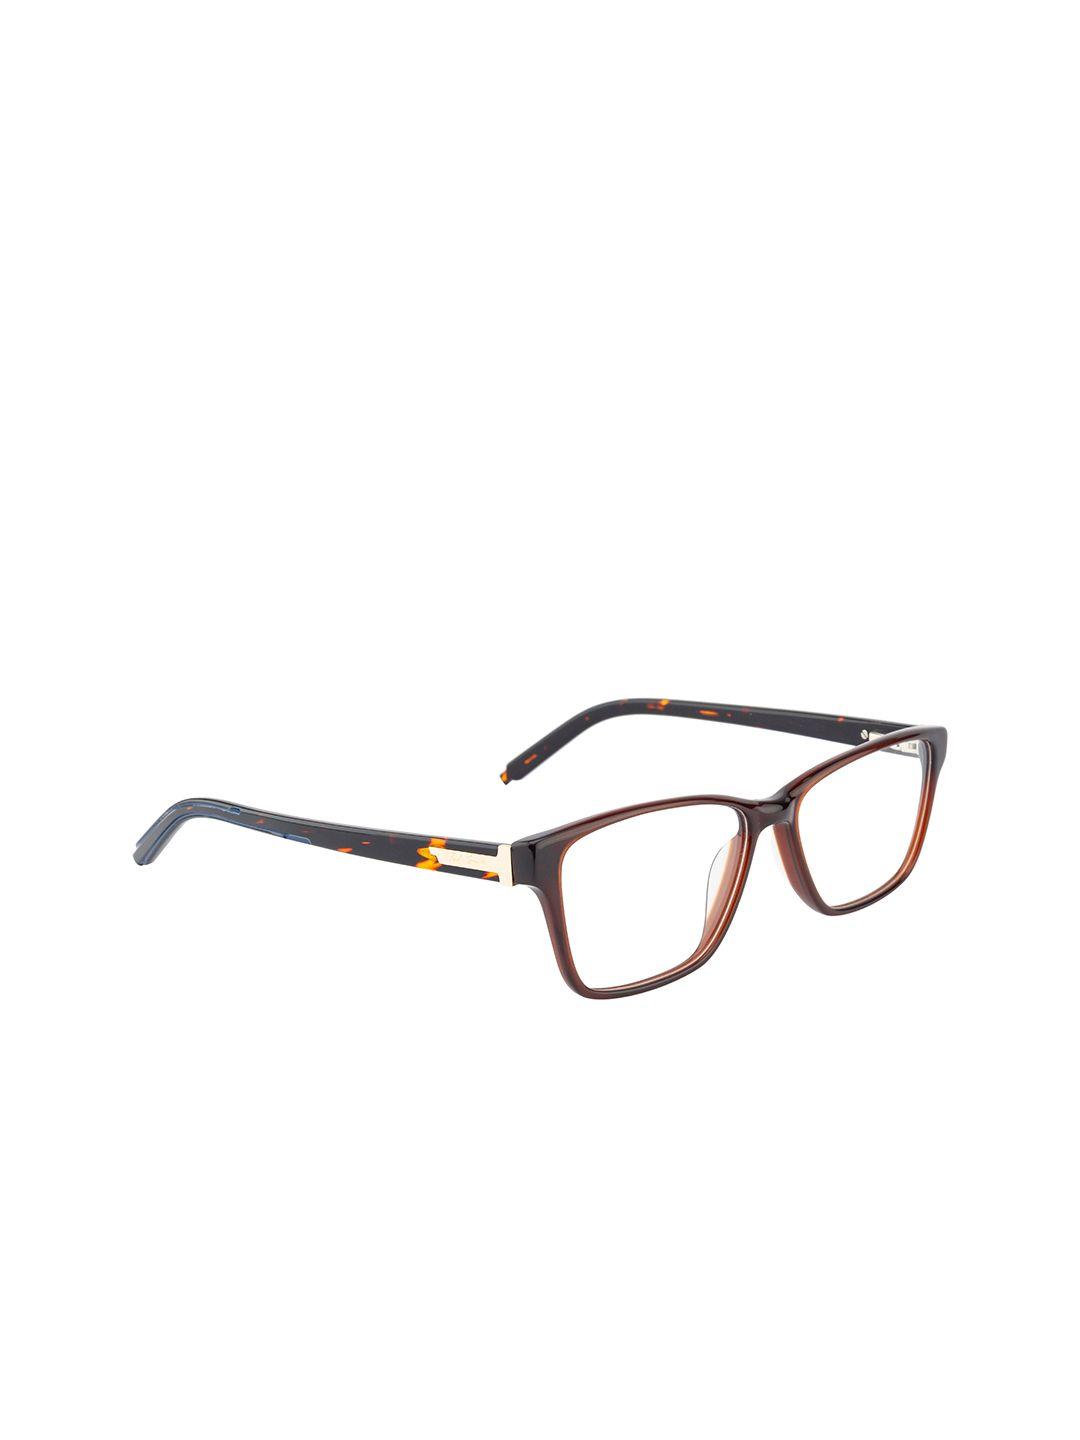 ted smith unisex brown & black full rim wayfarer frames eyeglasses